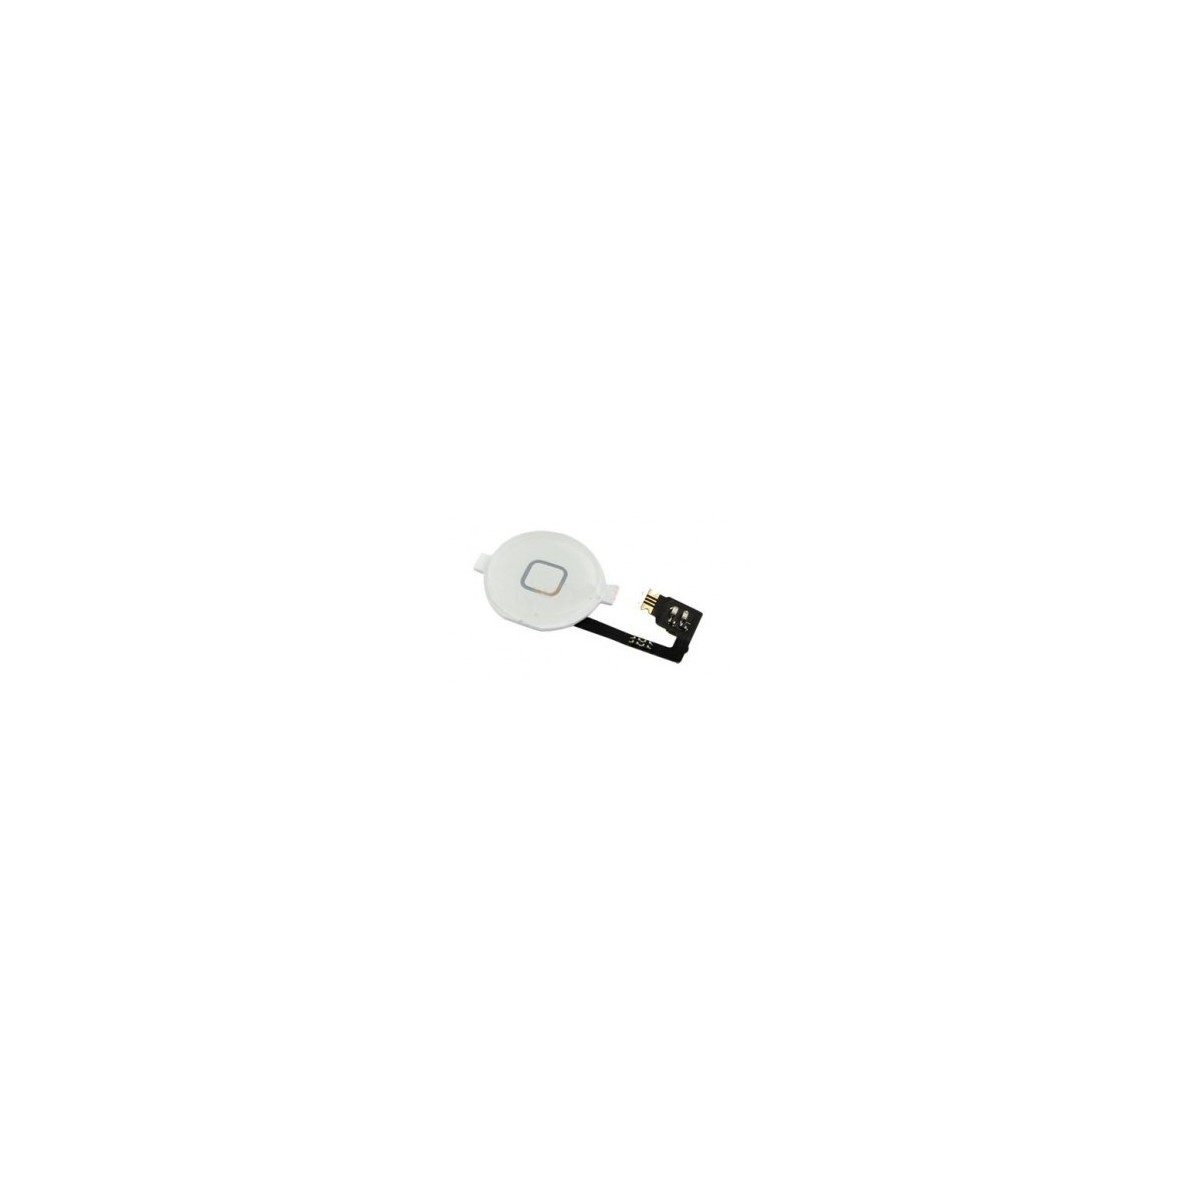 Home Button  Flex Kabel Cable für Apple iPhone 4S WEISS weiß